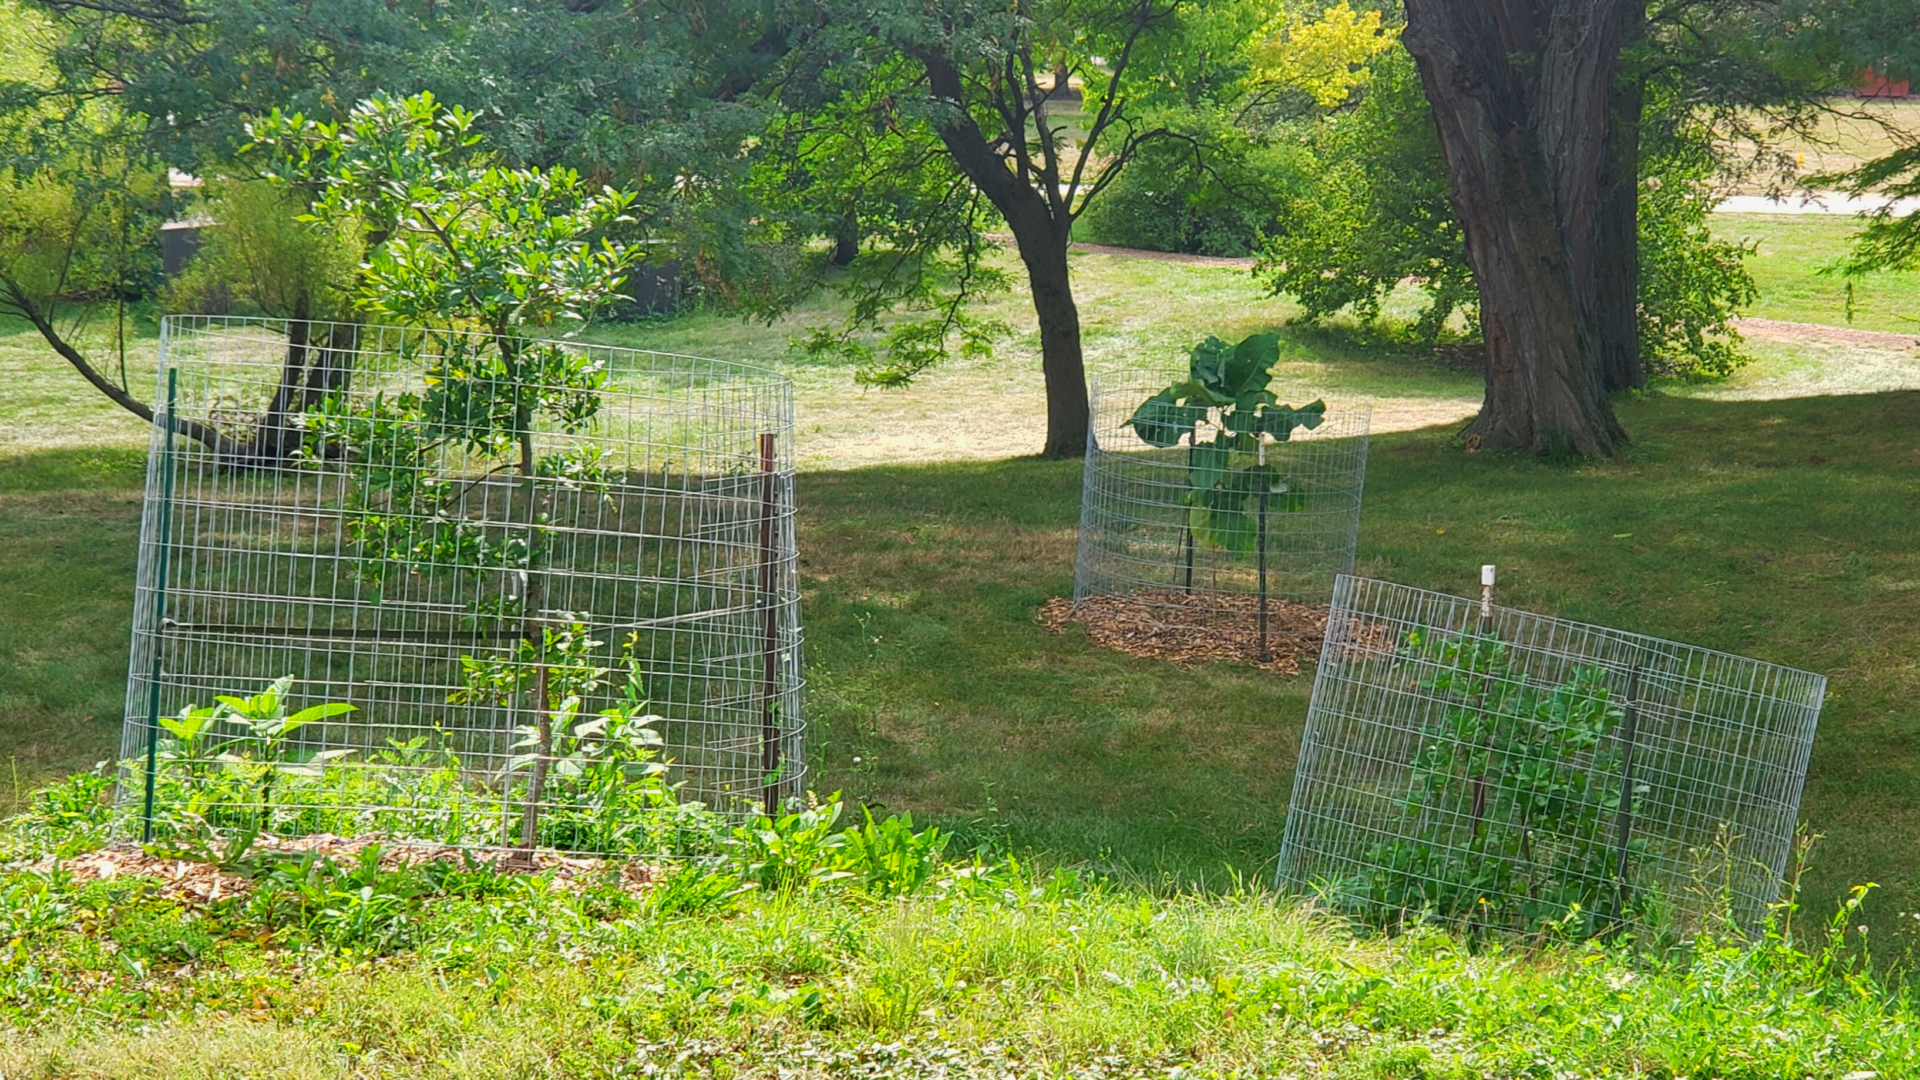 Fencing around threatened trees at the Arboretum